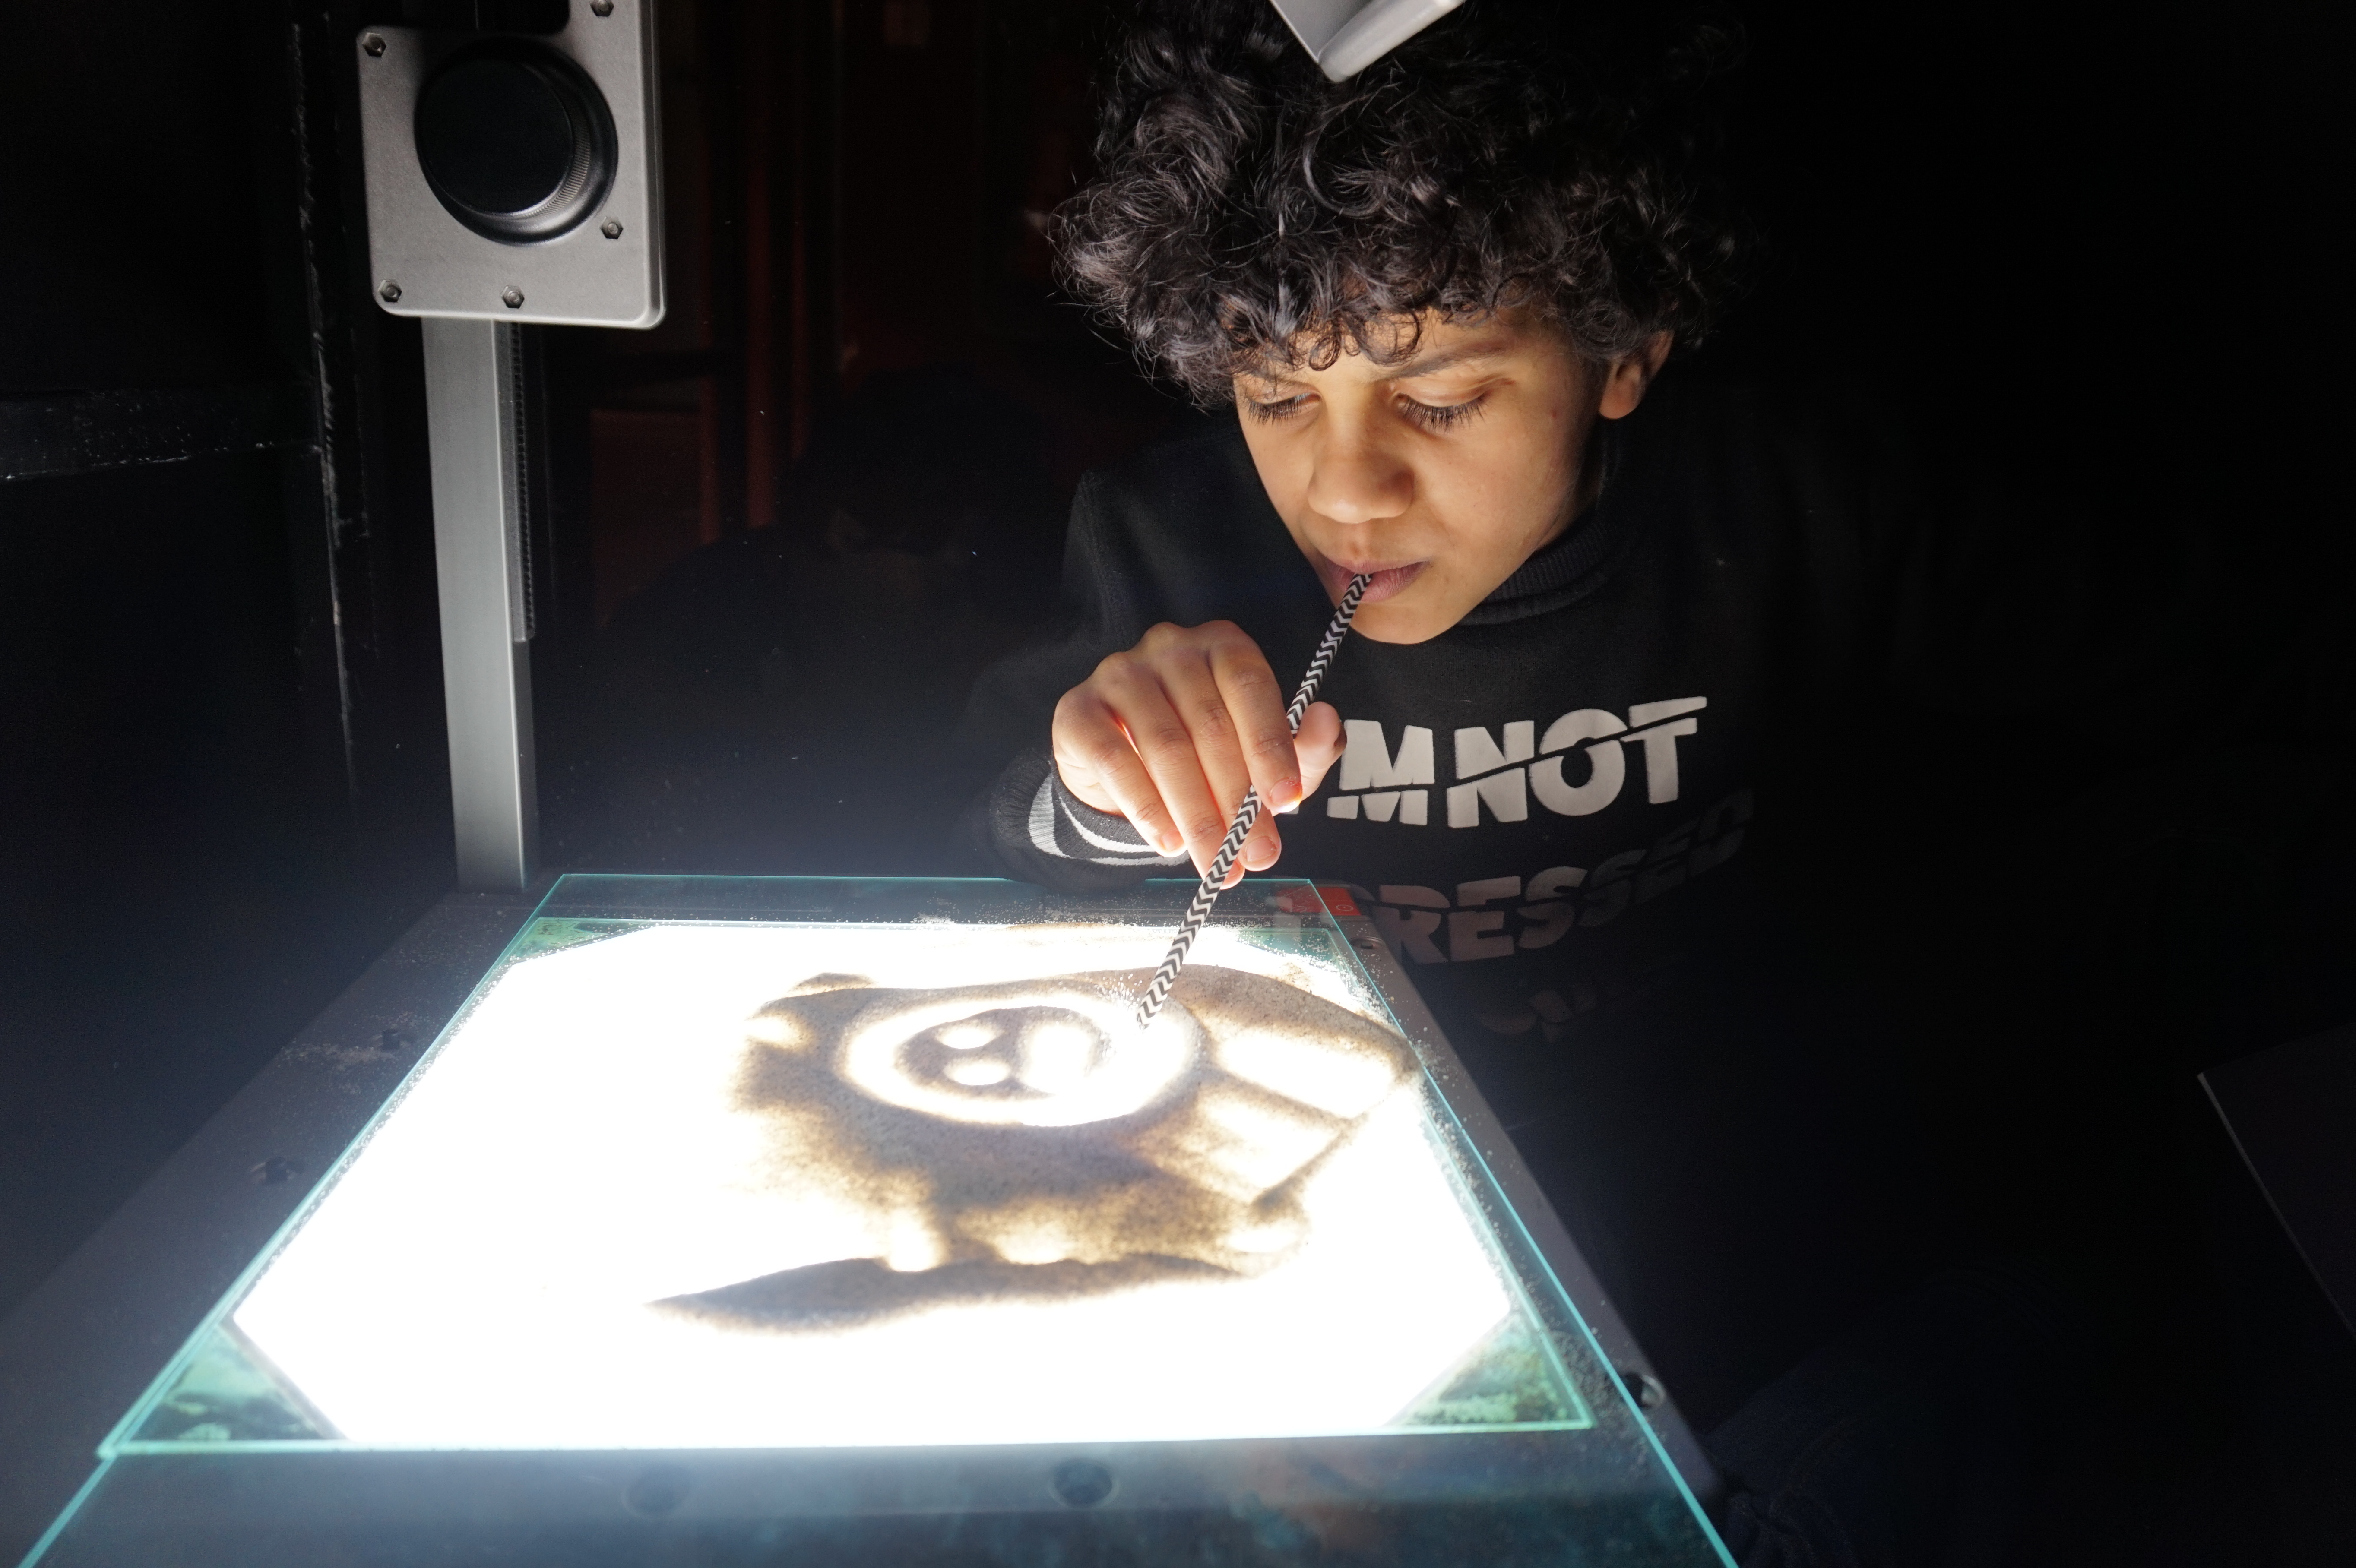 Ein Kind malt ein Bild auf einem Overhead-Projektor